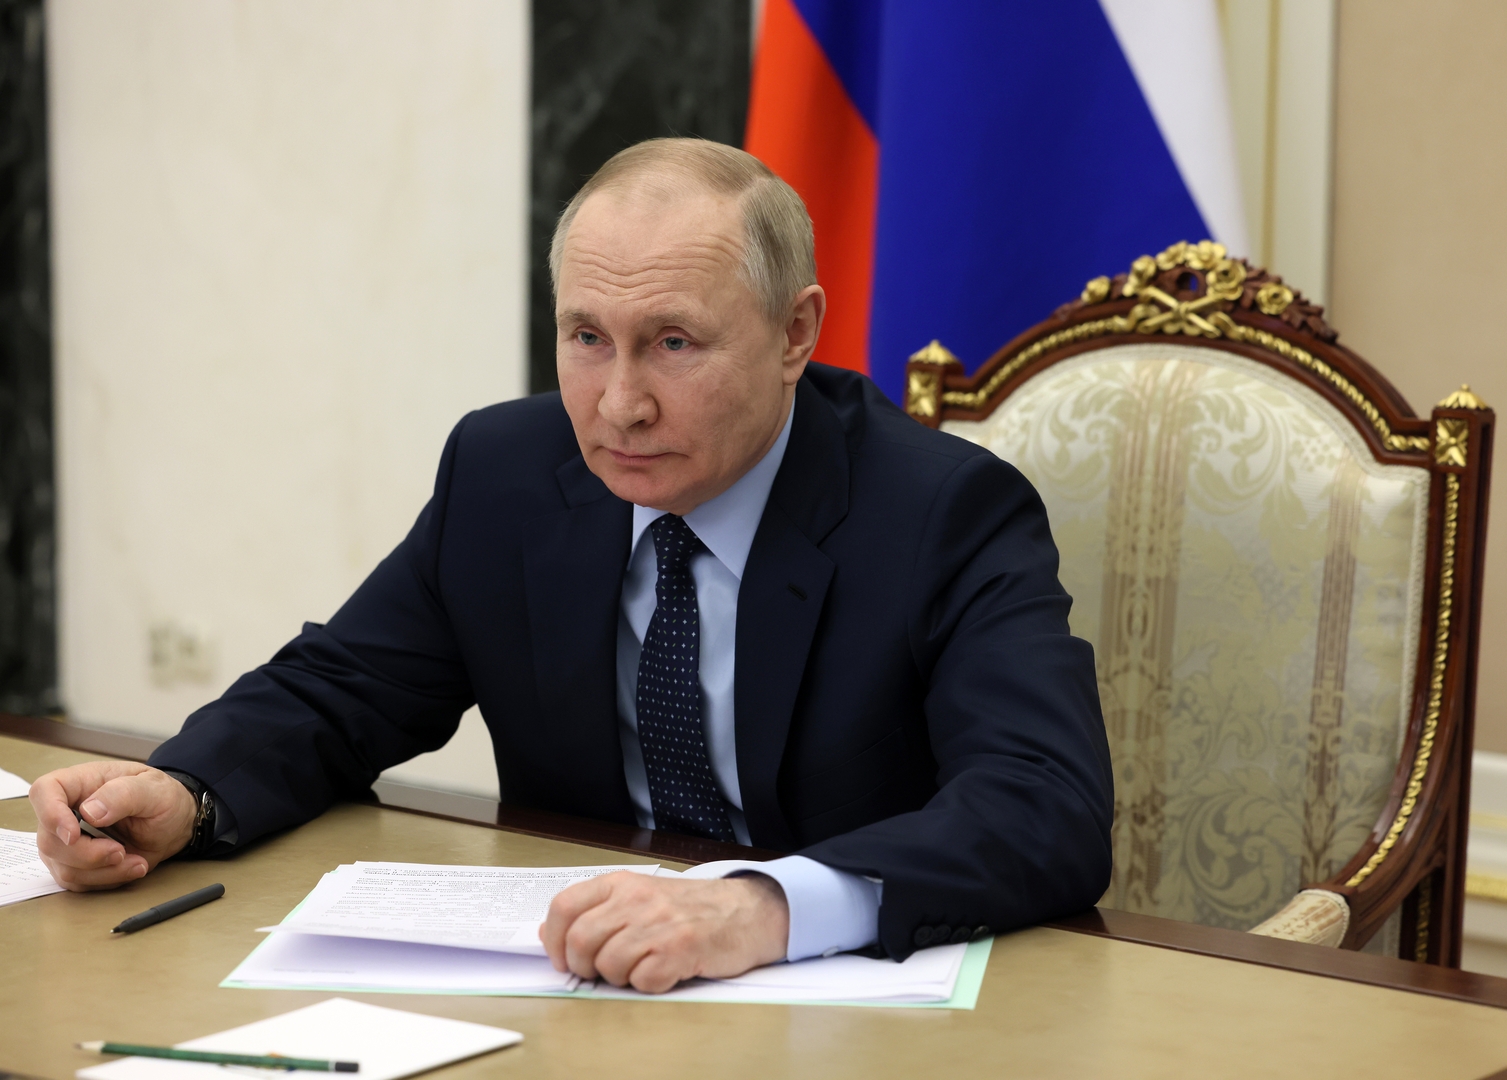 بوتين: العقوبات المفروضة على روسيا تثير أزمة عالمية